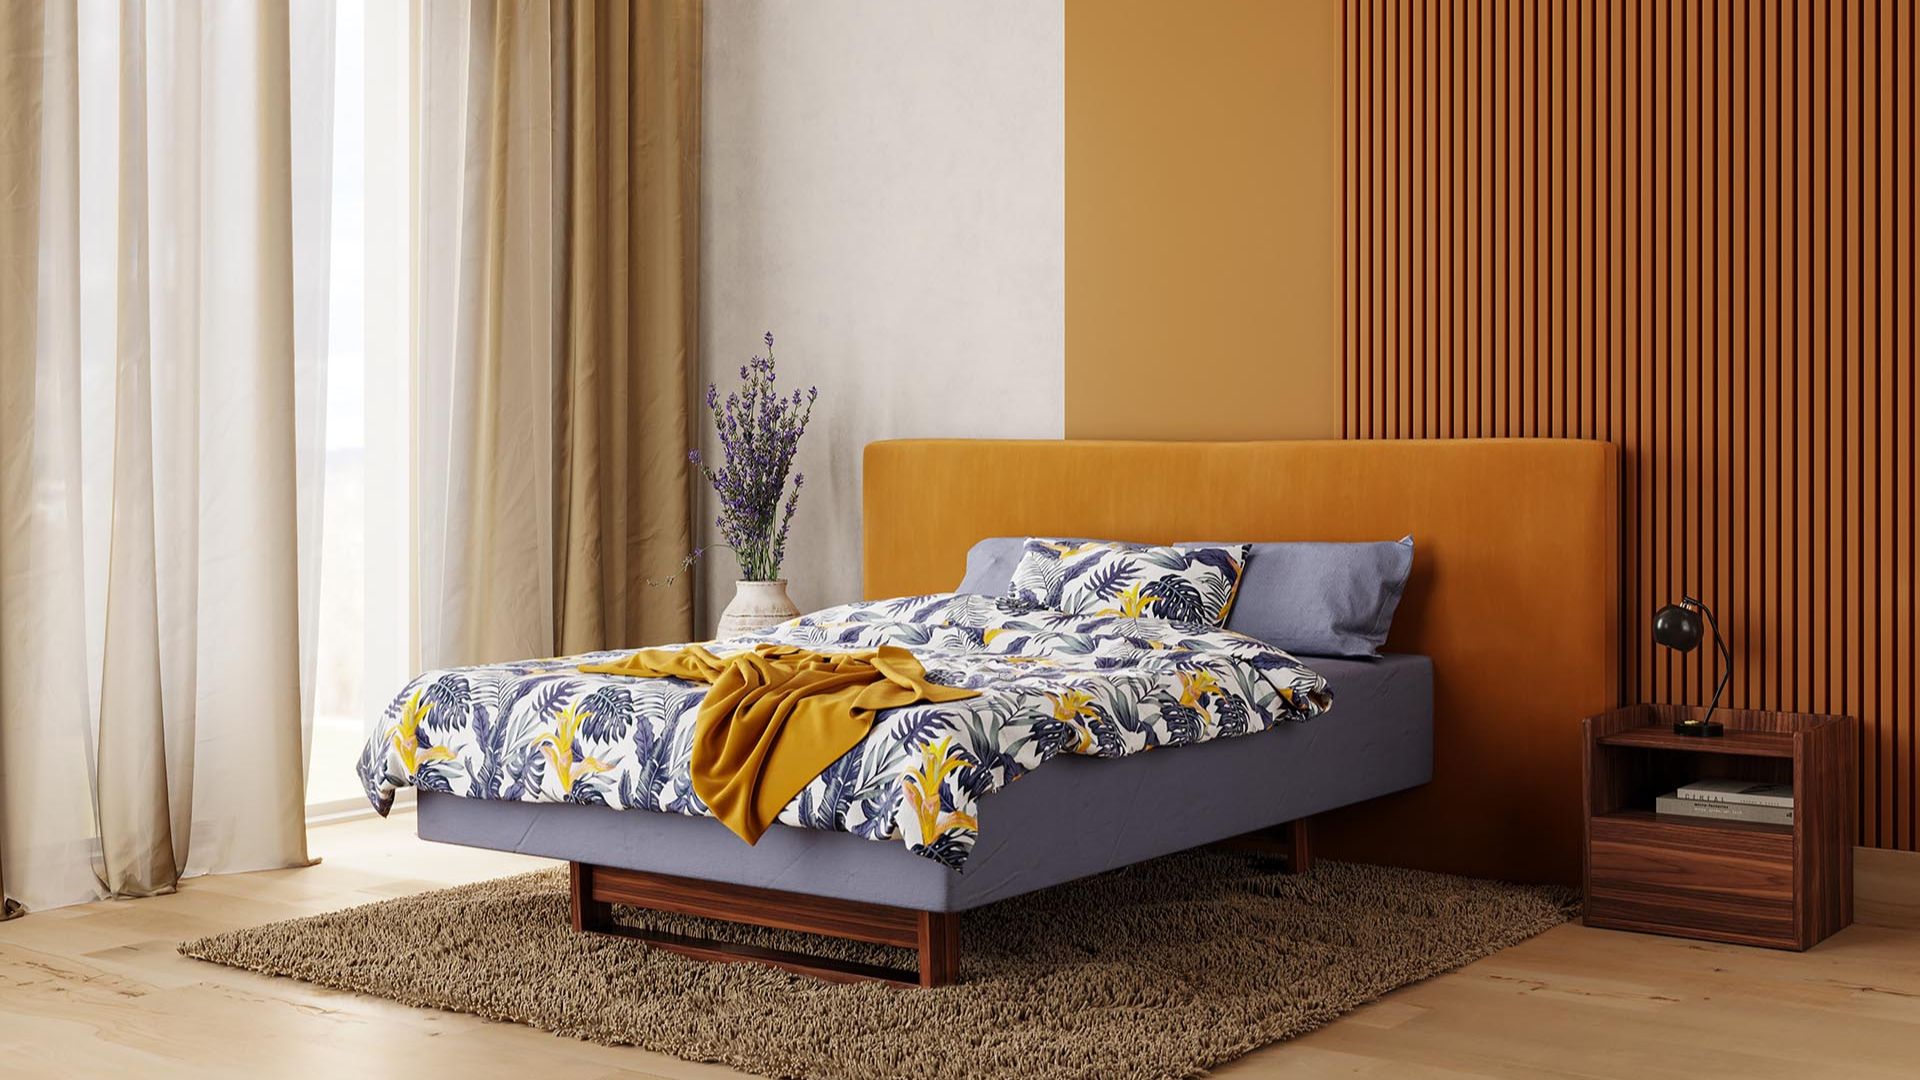 Titlis - Le lit rembourré Titlis est idéal pour les individualistes qui aiment les combinaisons personnelles.